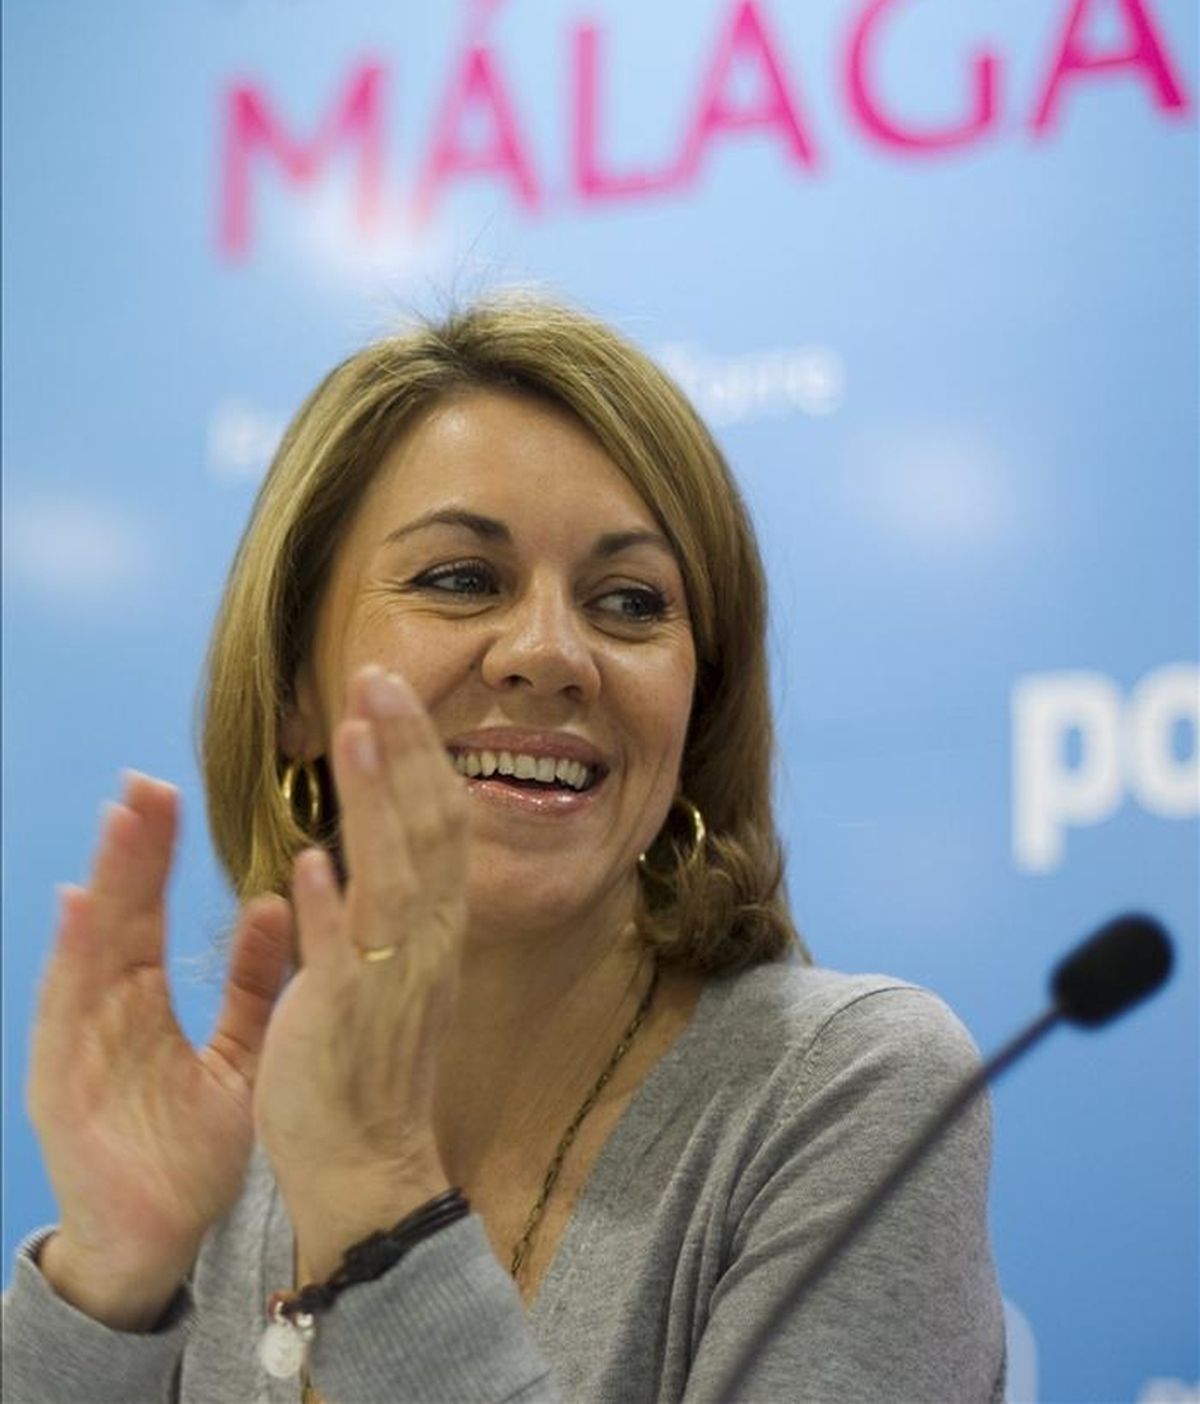 La secretaria general del PP, María Dolores de Cospedal, ha afirmado hoy que su partido ofrece "un auténtico proyecto de recuperación nacional" a partir del 22 de mayo, durante una reunión celebrada con los miembros de la candidatura del PP de Málaga. EFE